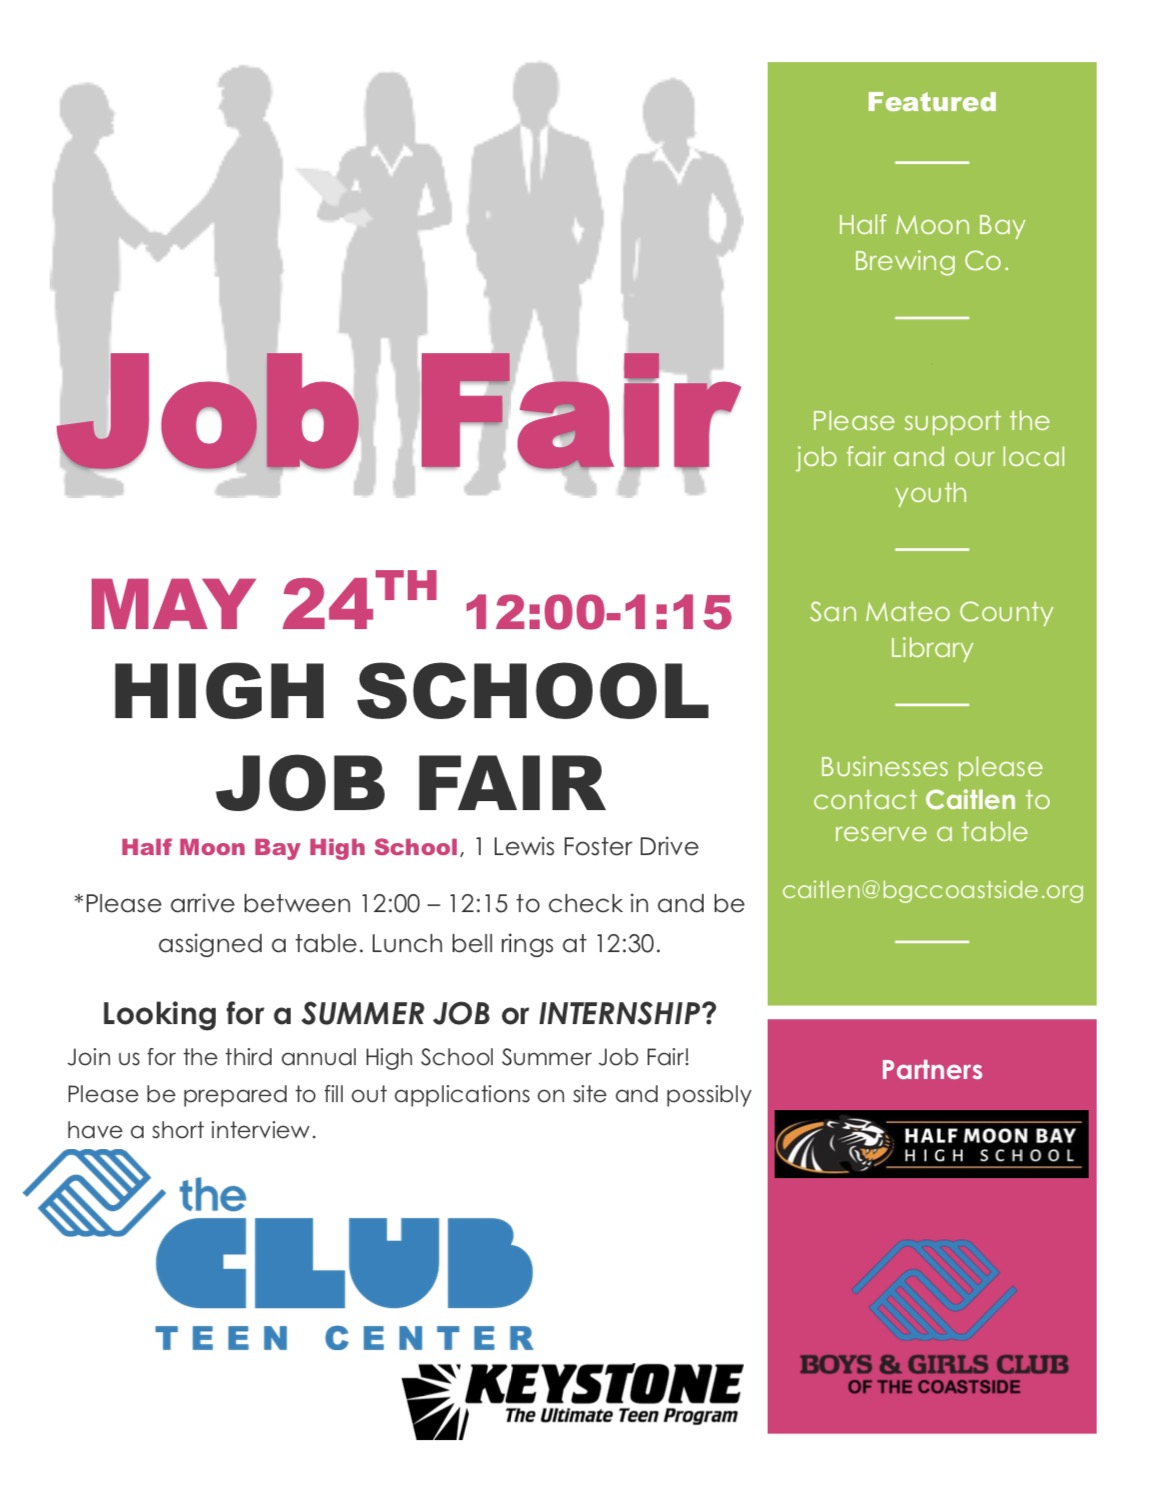 Christian county schools job fair